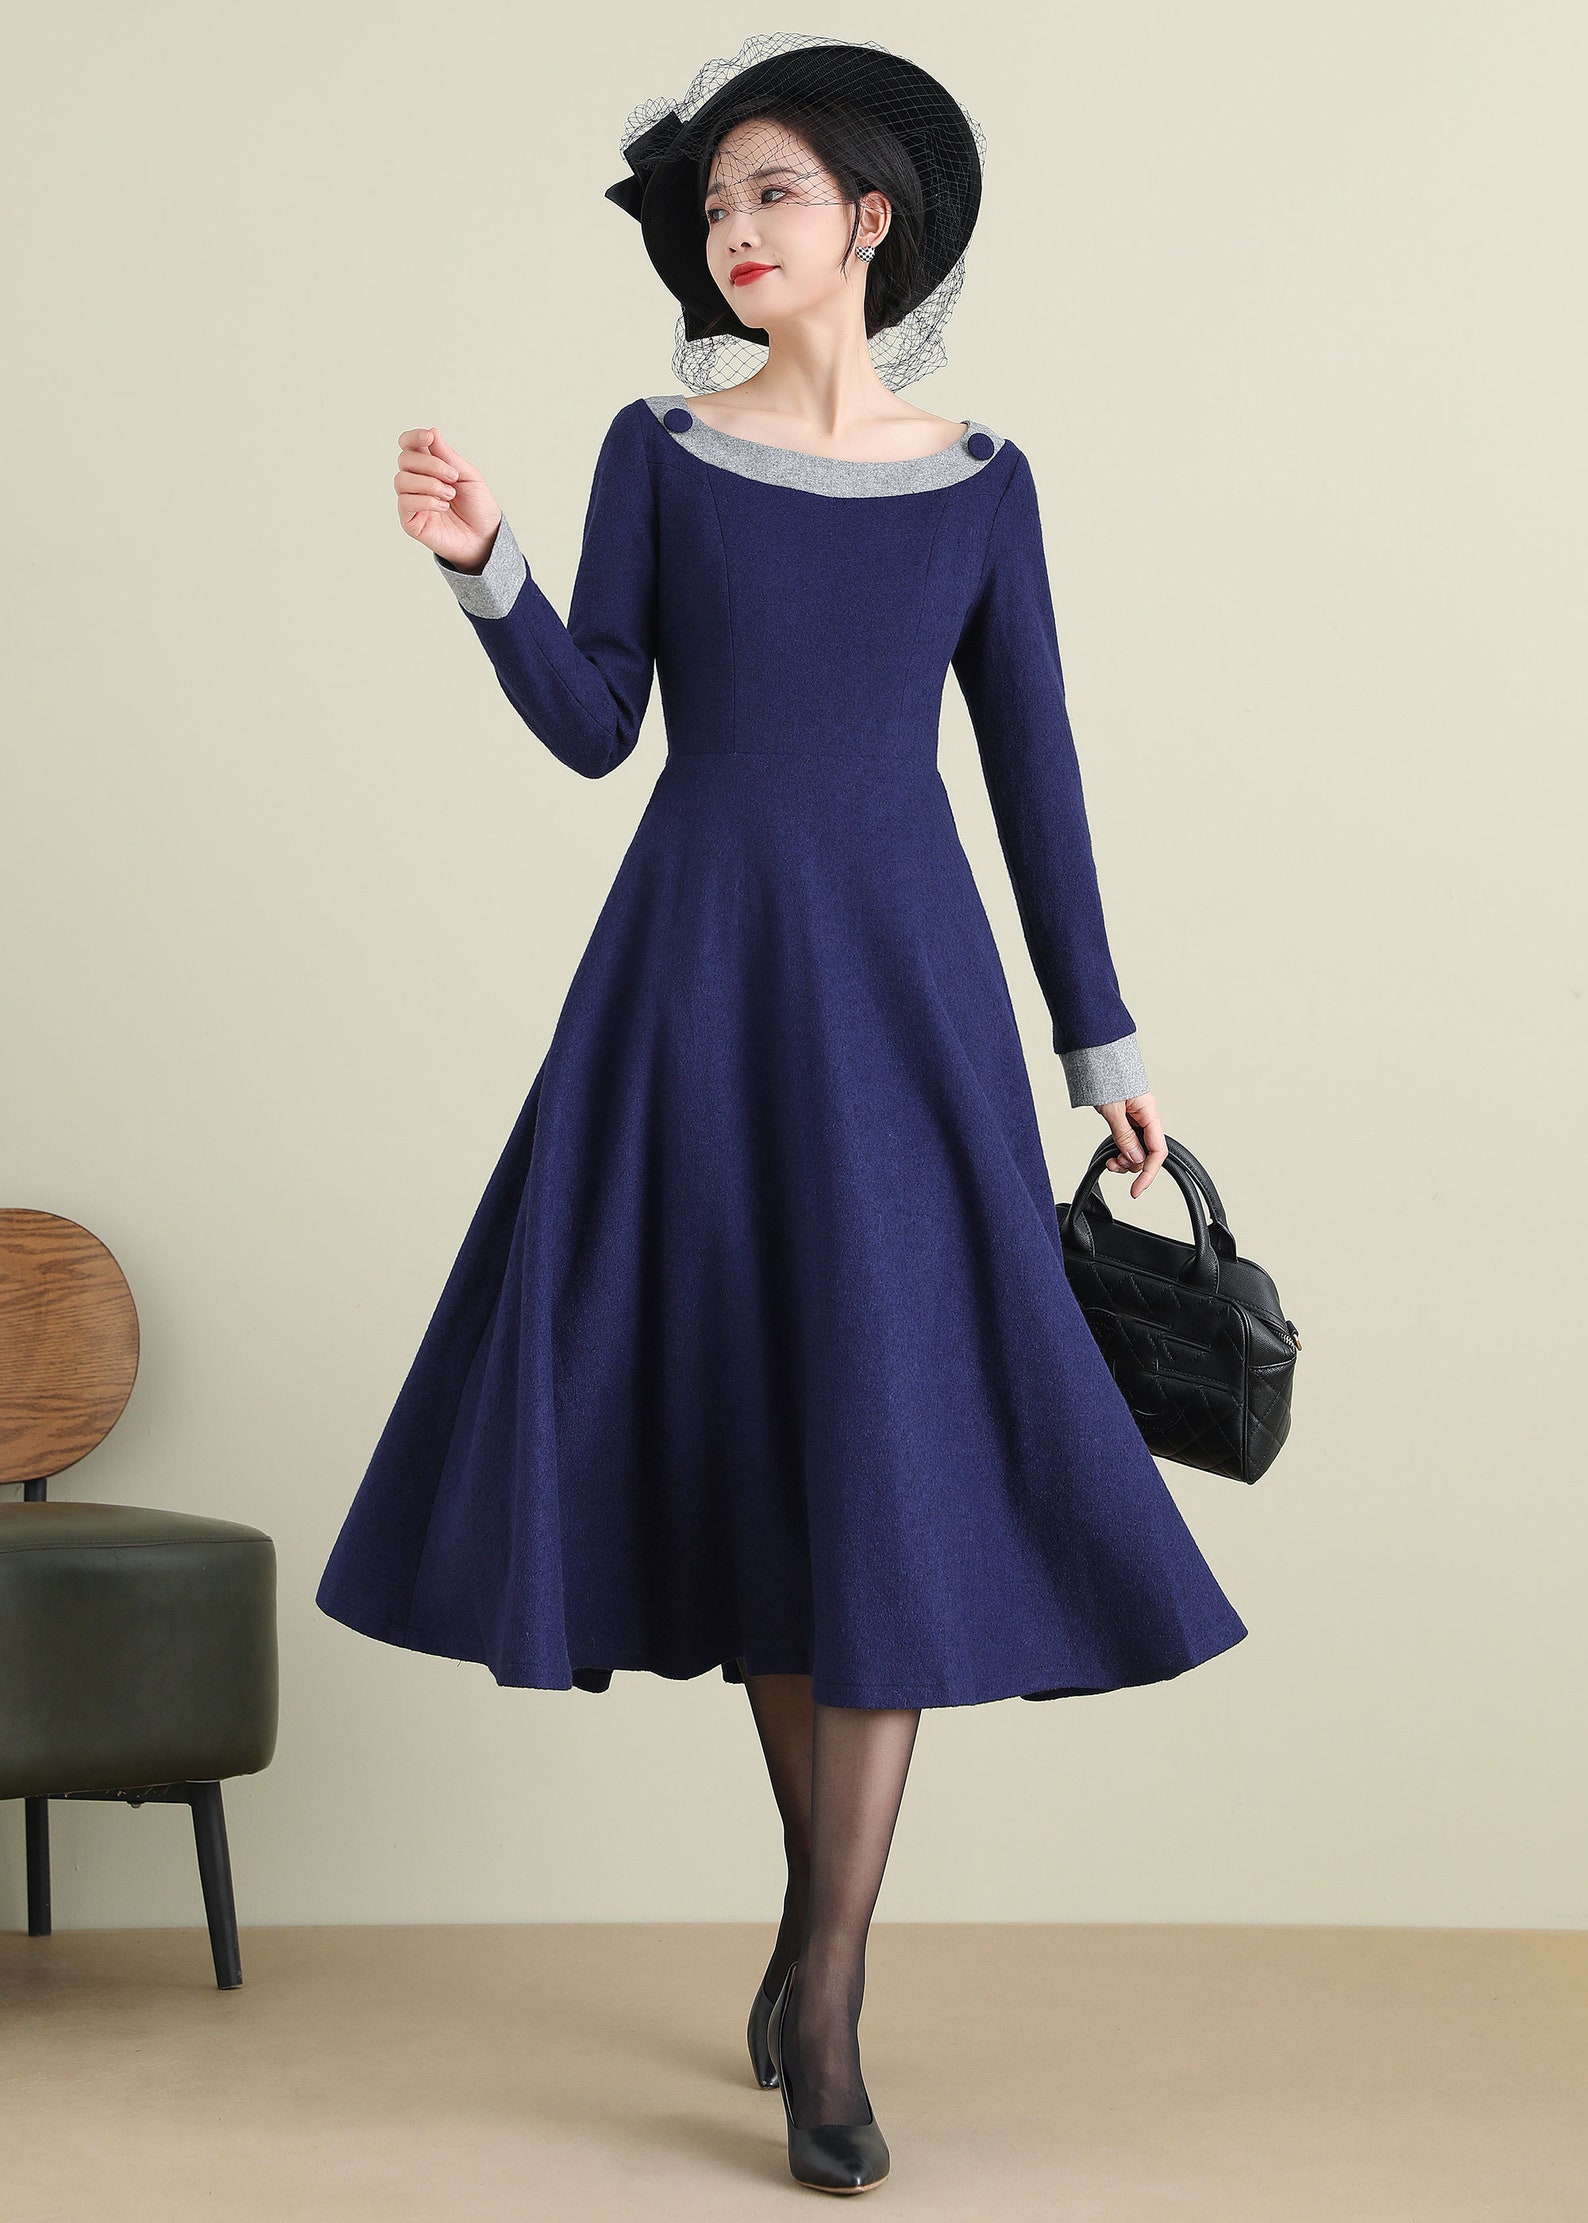 Wool Dress Blue Wool Dress Midi Dress A-line Dress Autumn - Etsy